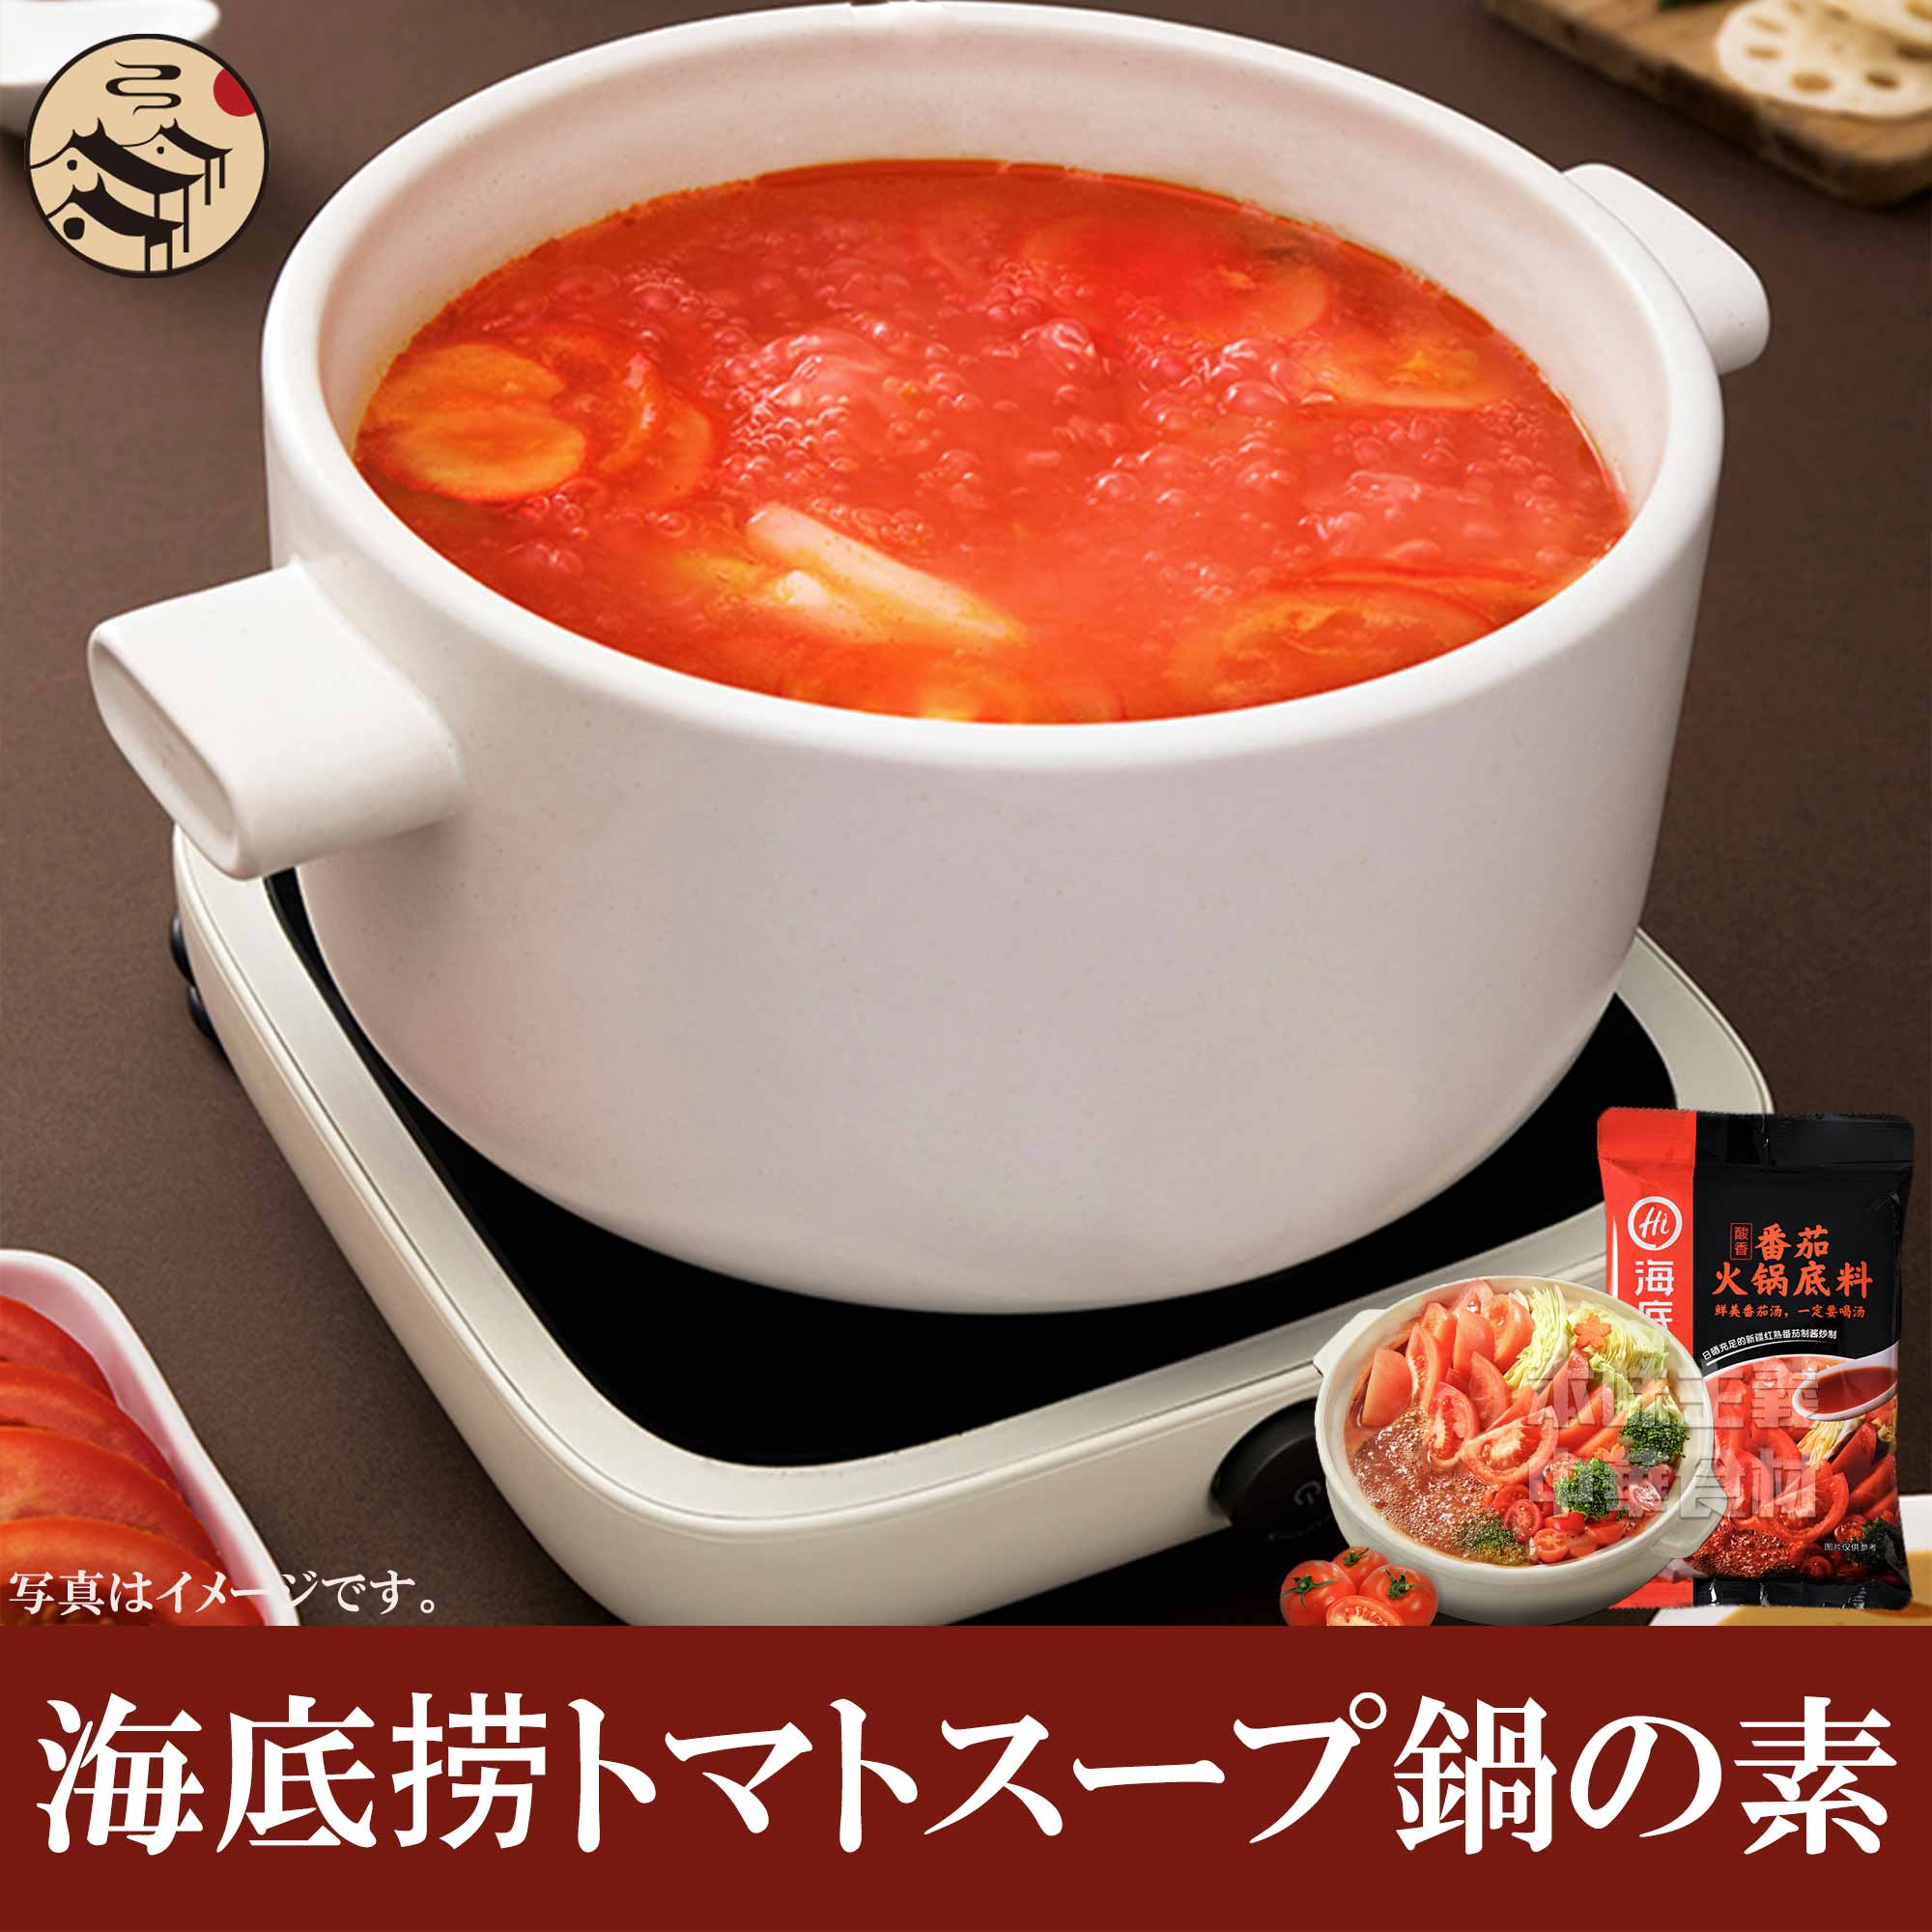 鍋の素 海底撈 トマトスープ 番茄火鍋底料 トマト味 0g 3 5人分 しゃぶしゃぶの素 中華調味料 定番の人気シリーズpoint ポイント 入荷